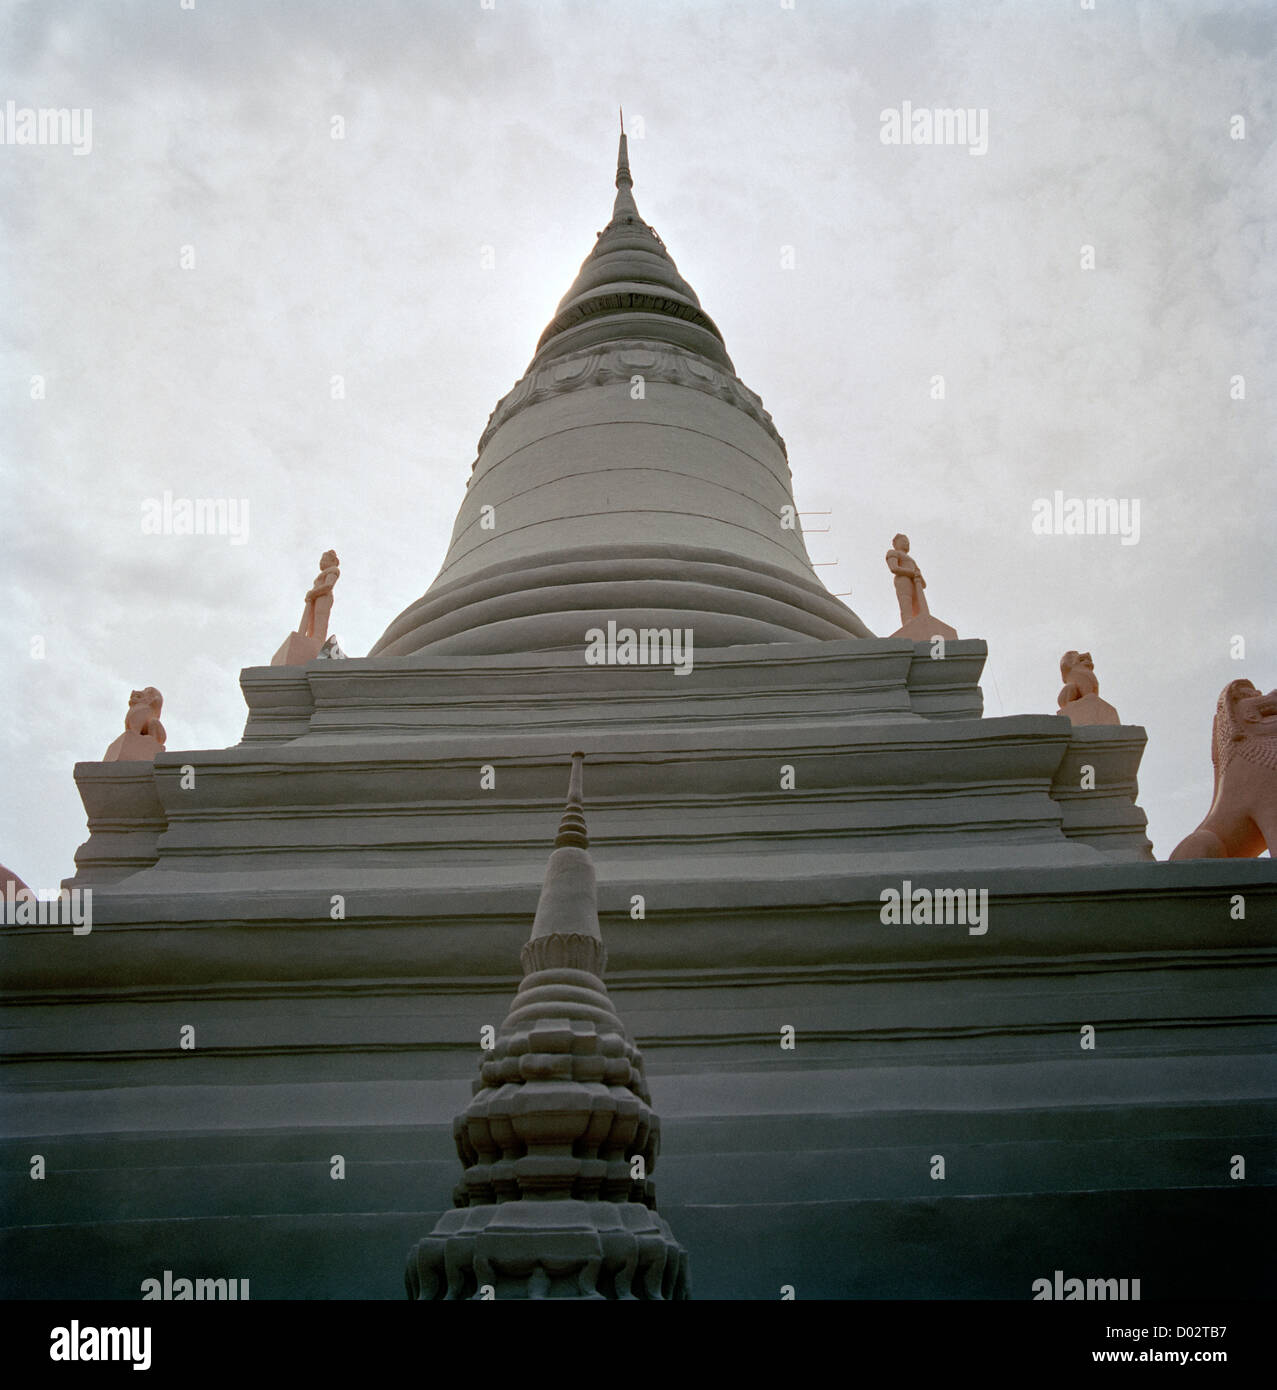 Wat Phnom Tempel Stupa in Phnom Penh Kambodscha Fernost Südost-Asien. Buddhismus buddhistische Religion religiöse Architektur Geschichte Wanderlust Travel Stockfoto